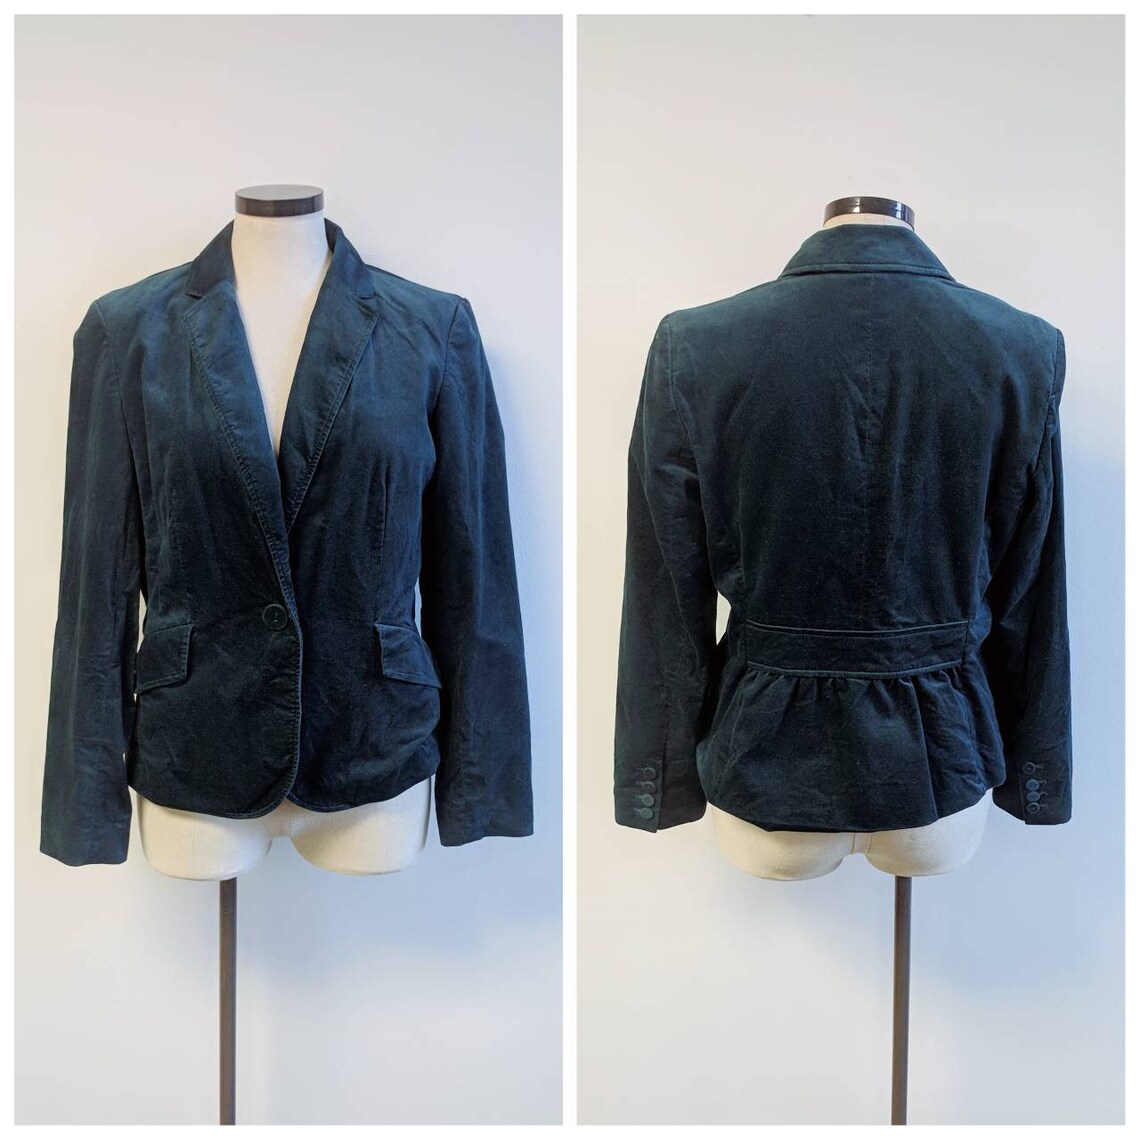 Vintage Clothing Dark Teal Blue Velvet Jacket Vintage Ladies - Etsy